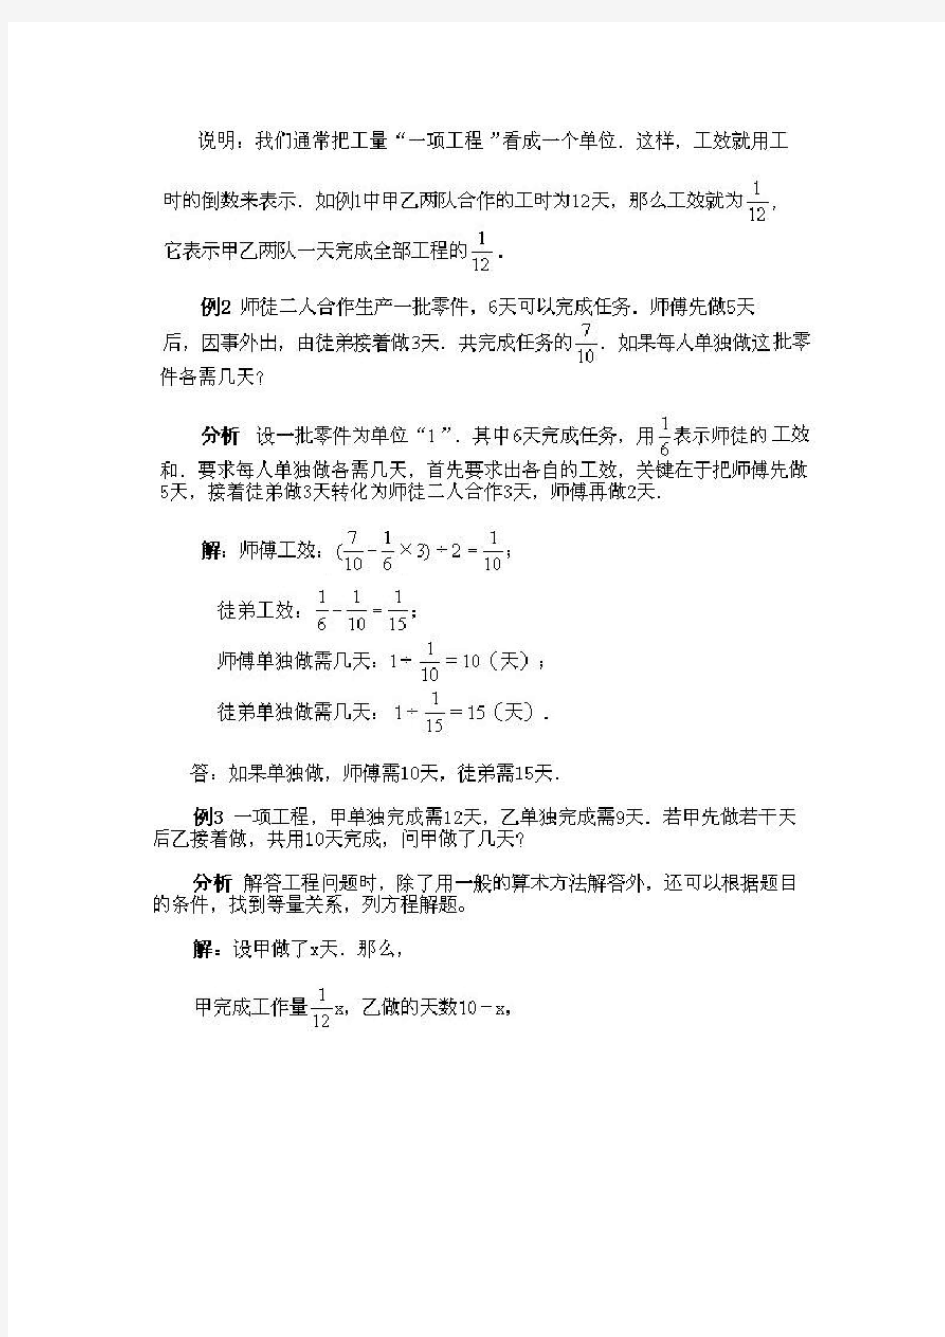 【深圳市】小学六年级奥数分类练习题及答案 (1)